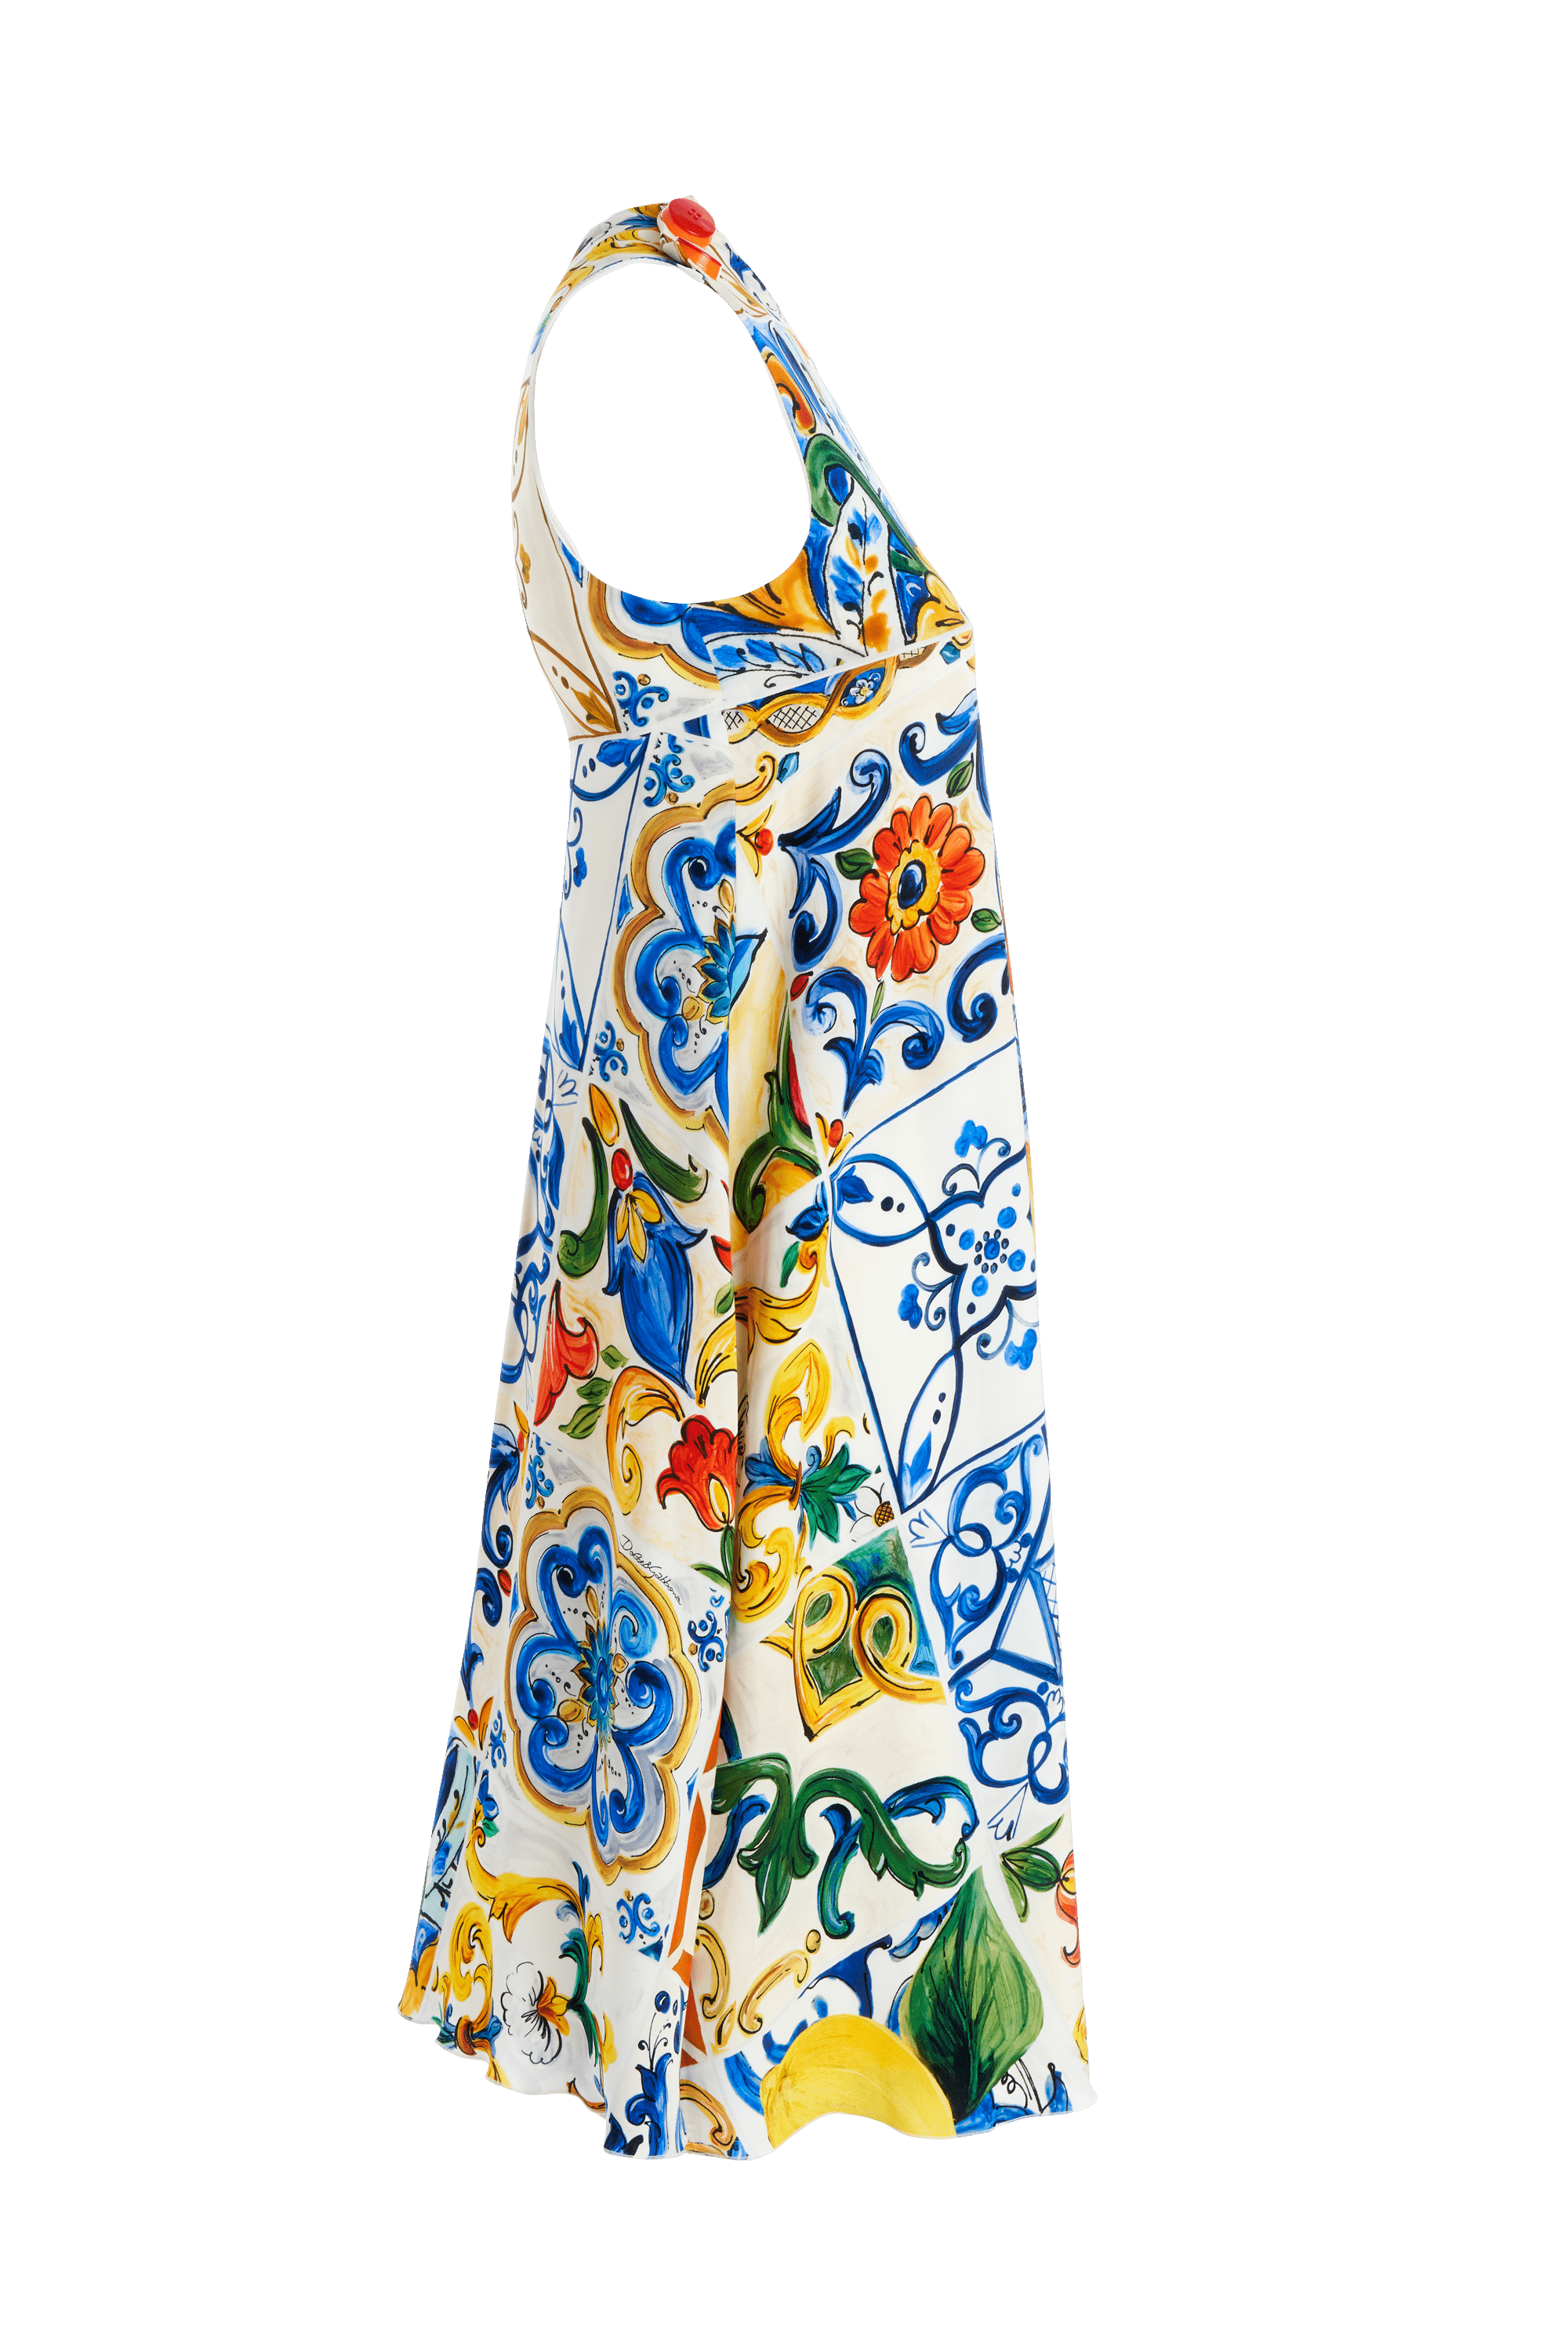 Dolce & Gabbana Lemon Sicily Dress Size 42